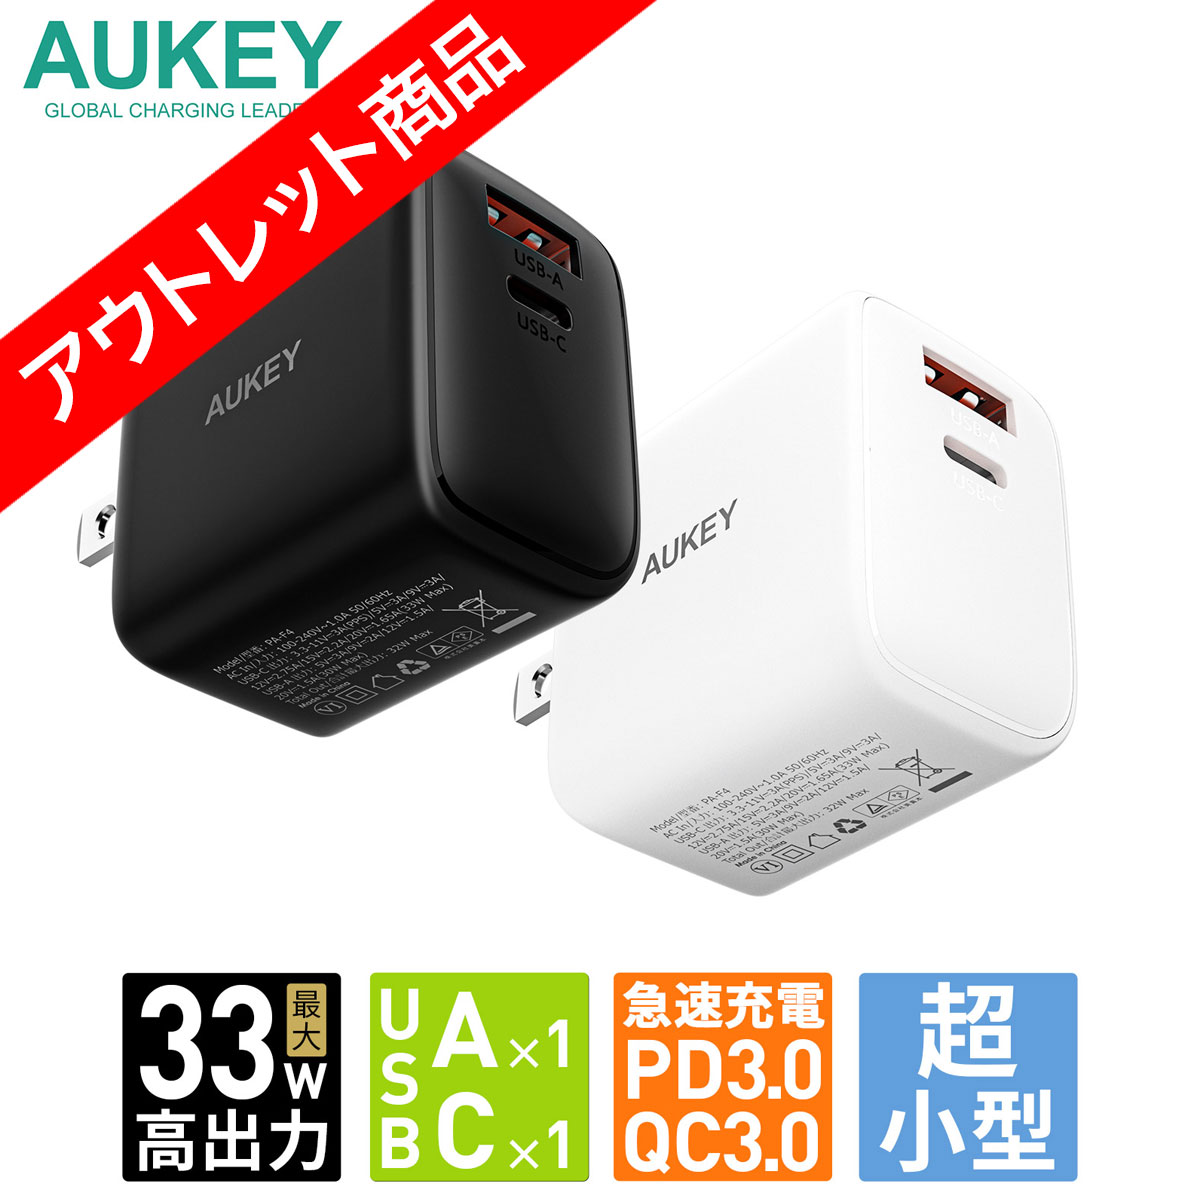 Amazon | HHKB Professional HYBRID Type-S 日本語配列／雪、無刻印キートップセット | ノーブランド品 |  パソコン用キーボード 通販